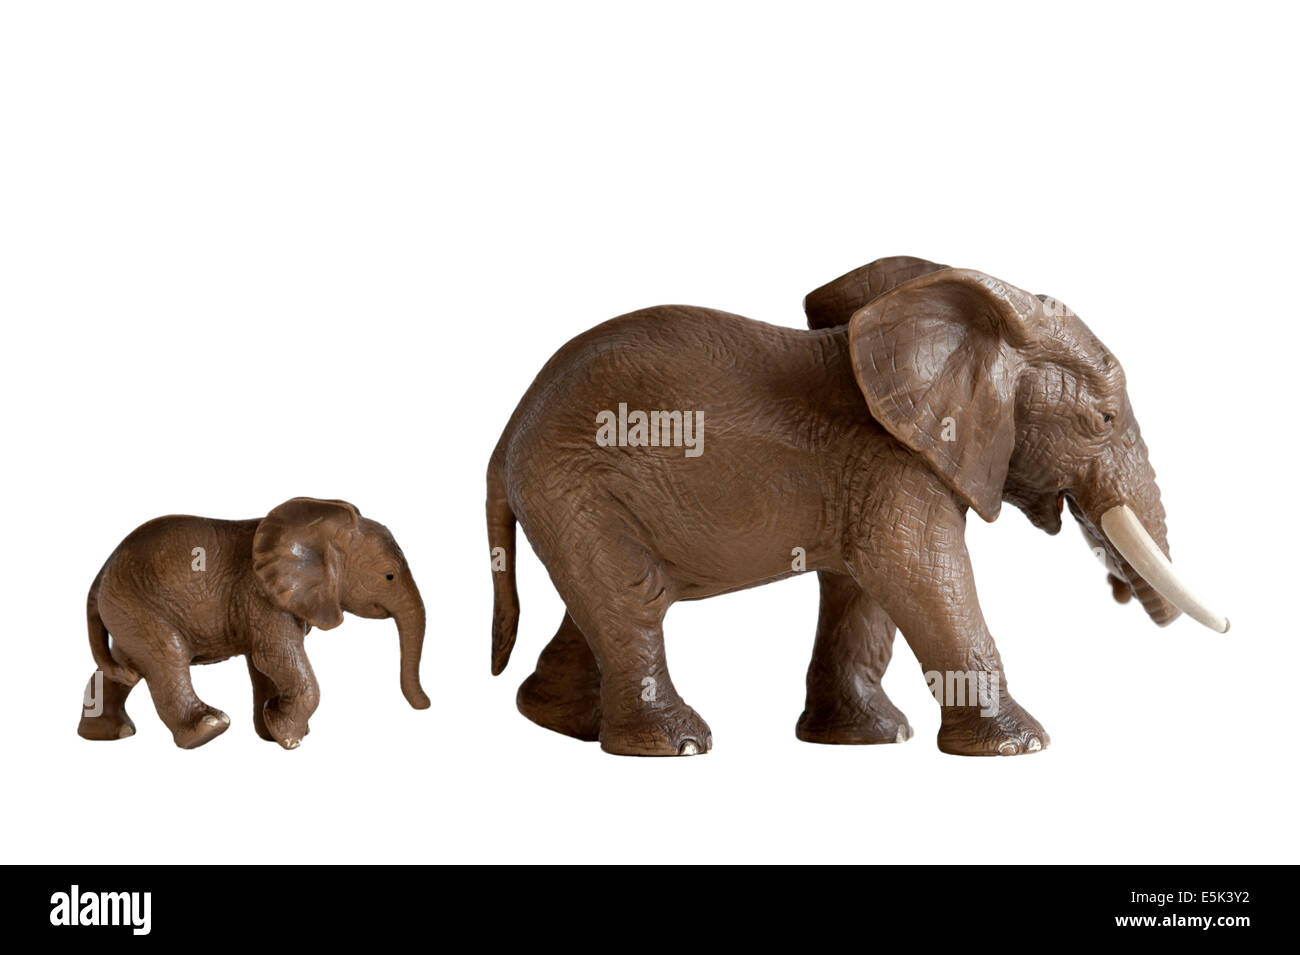 La madre y el bebé elefante juguetes aislado sobre fondo blanco. Foto de stock